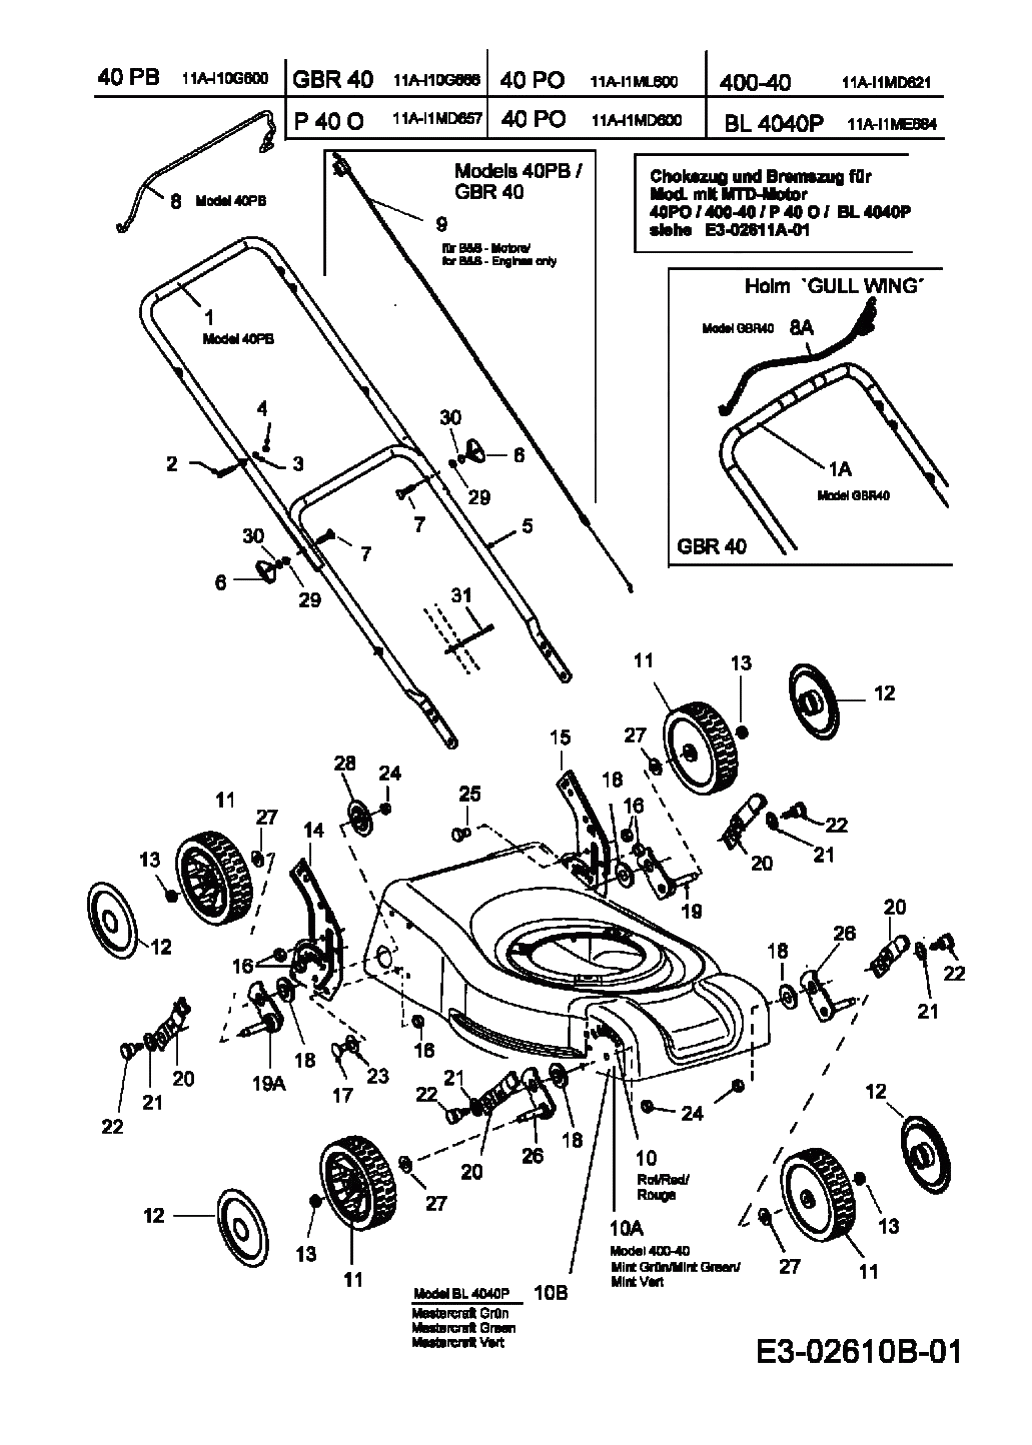 MTD Артикул 11A-I1ML600 (год выпуска 2007). Ручка, колеса, регулятор высоты реза